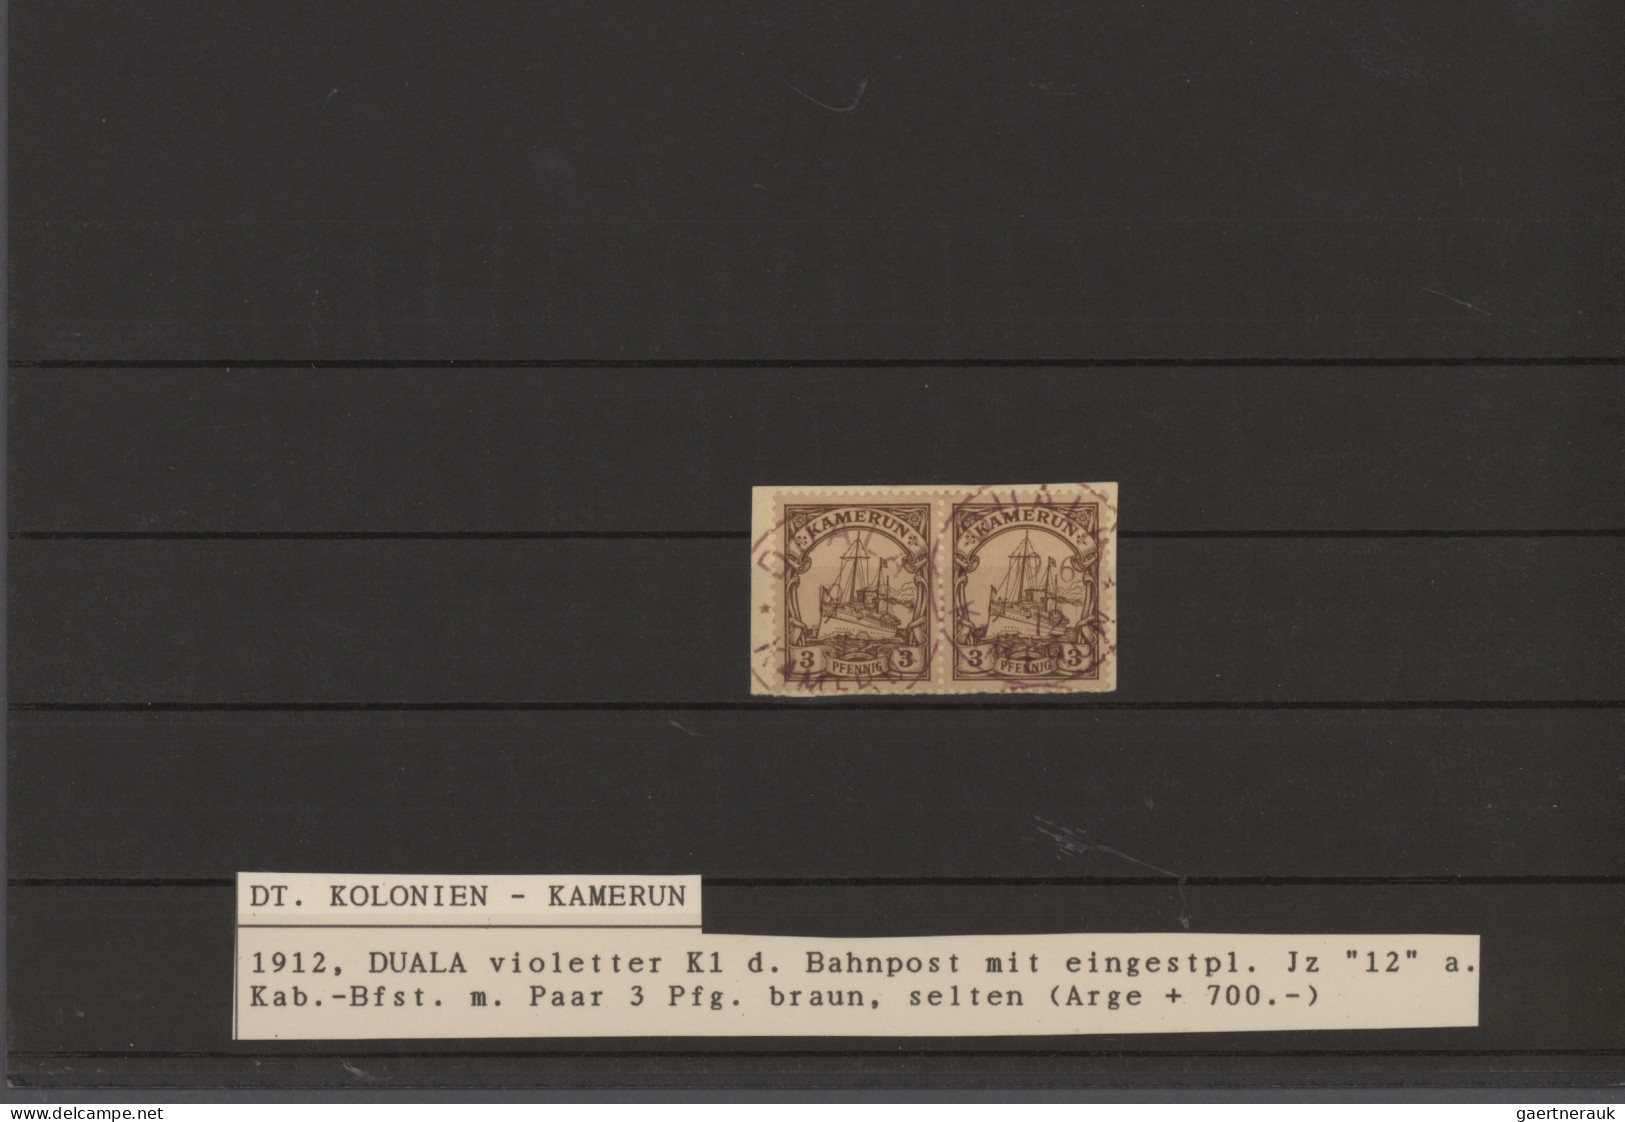 Nachlässe: 1884 ab, sehr interessanter Steckkartenposten mit fast nur Briefen un